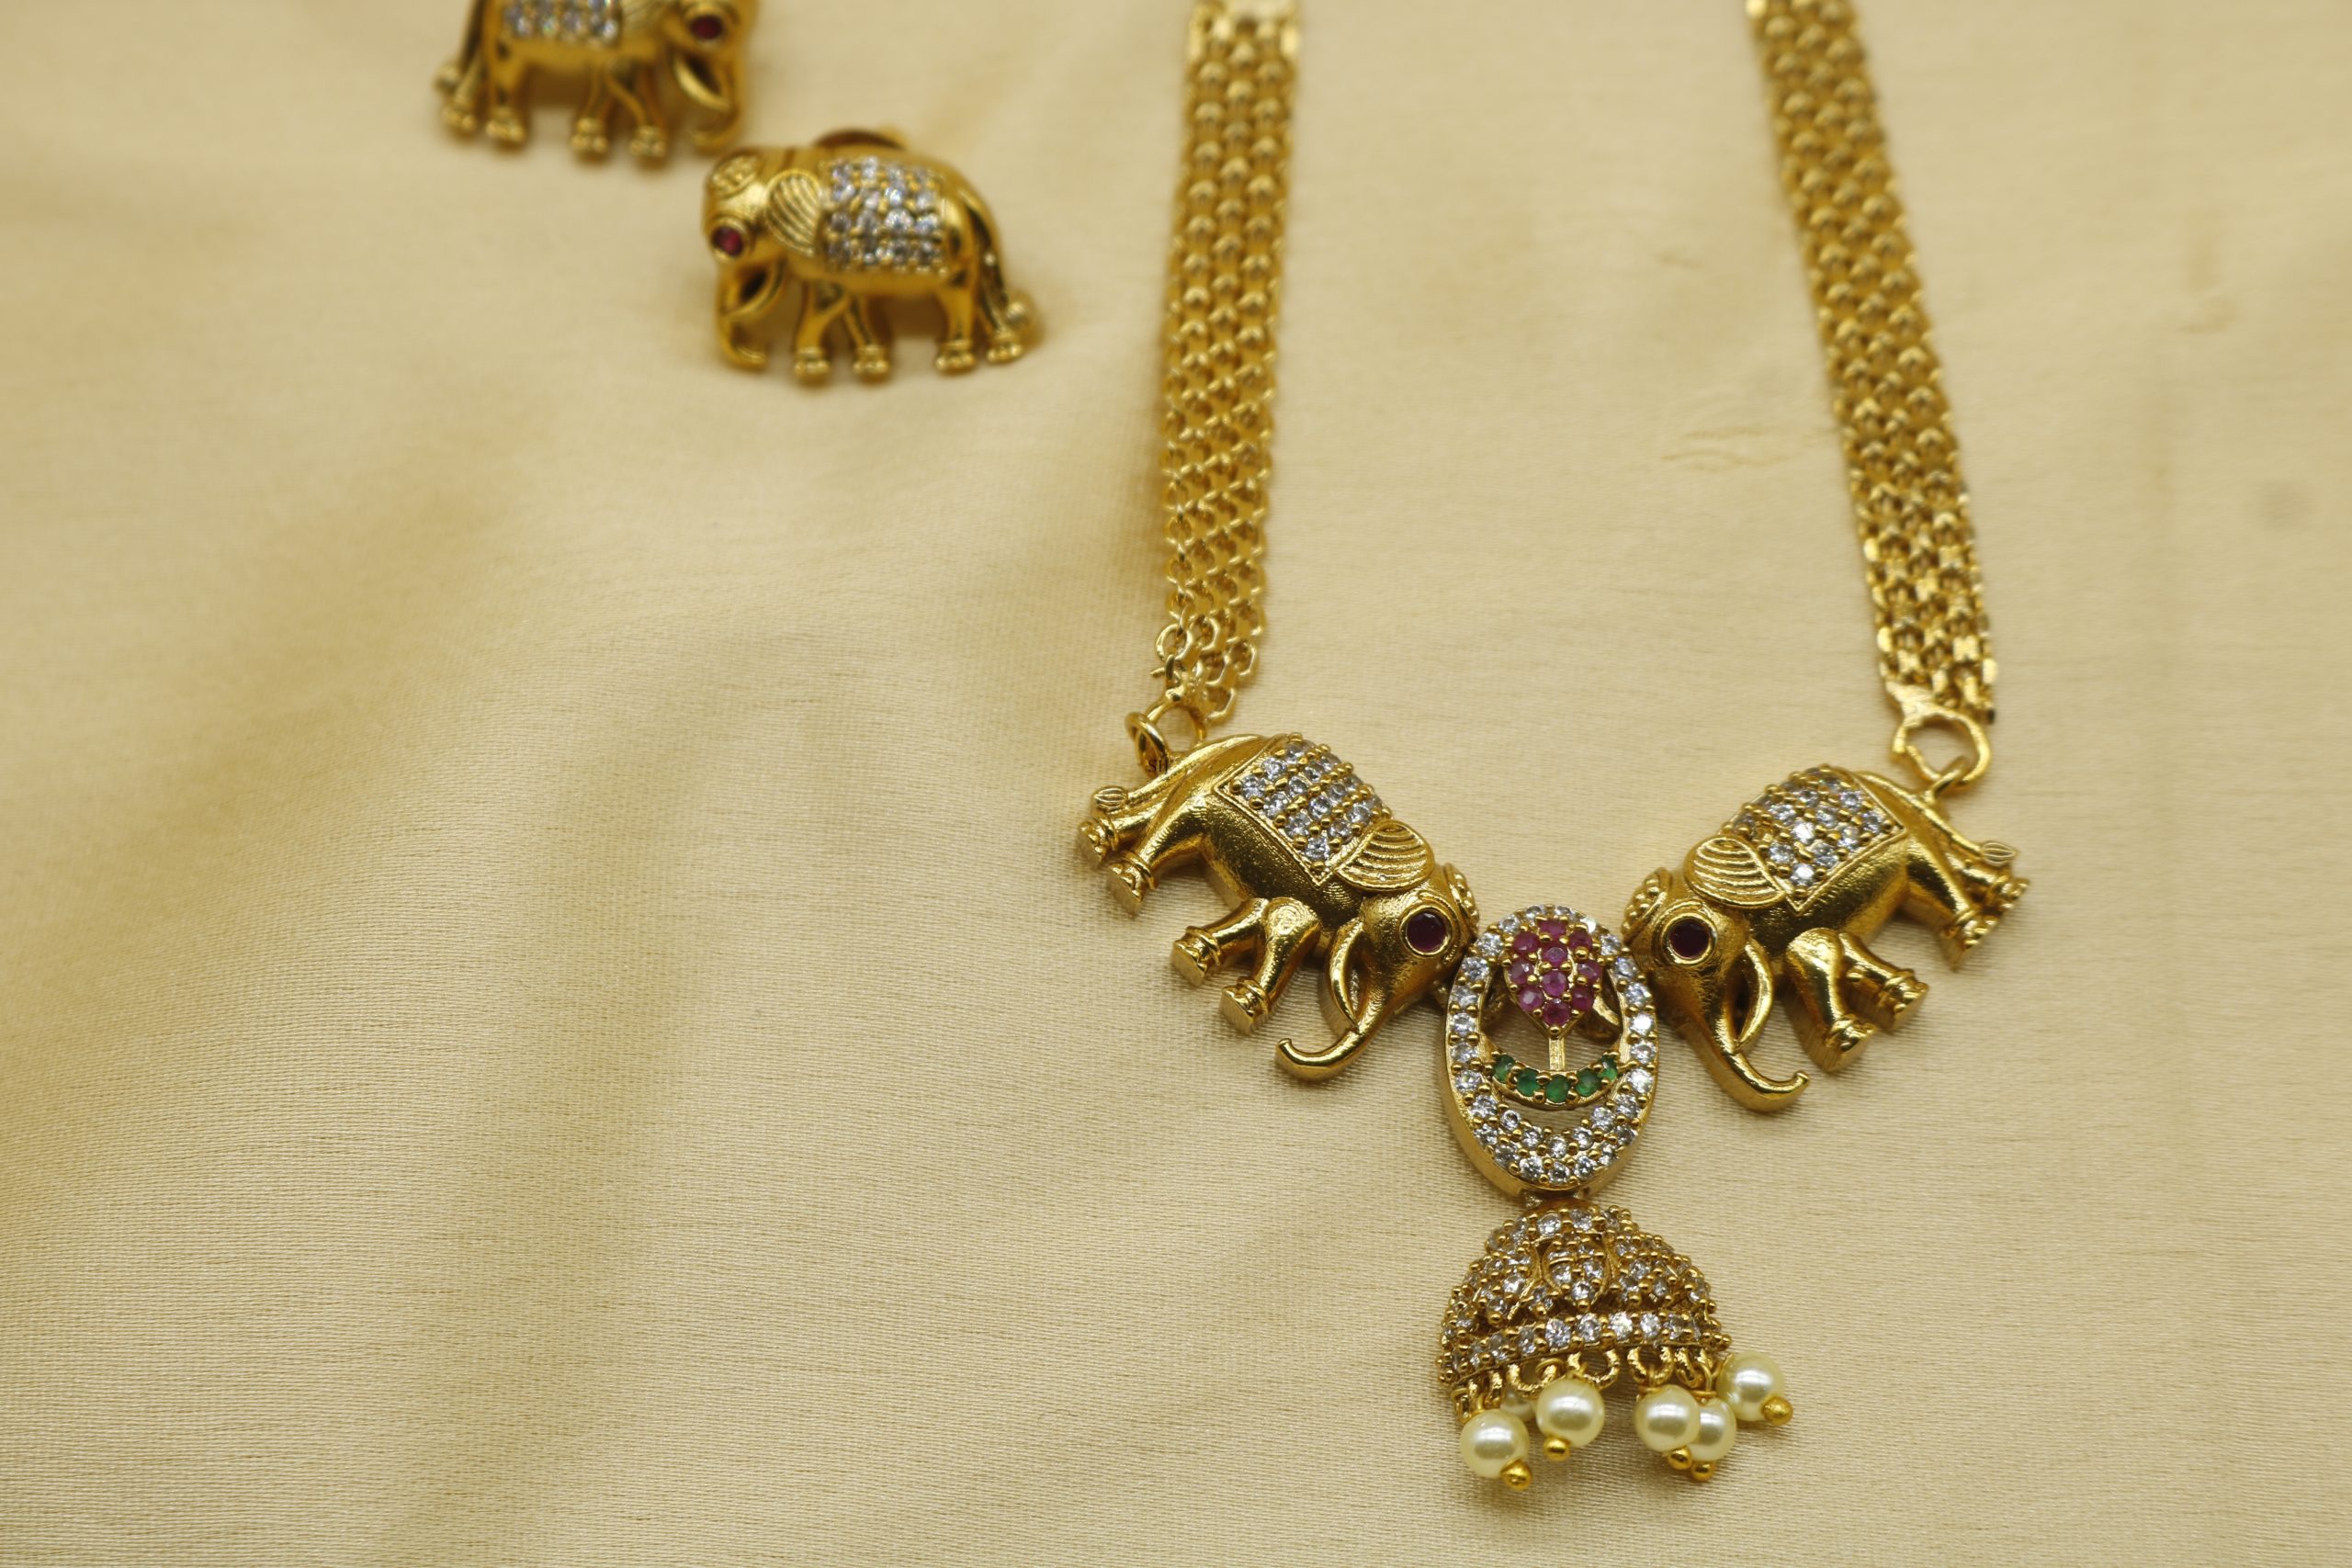 Dual Elephants Pendant Necklace